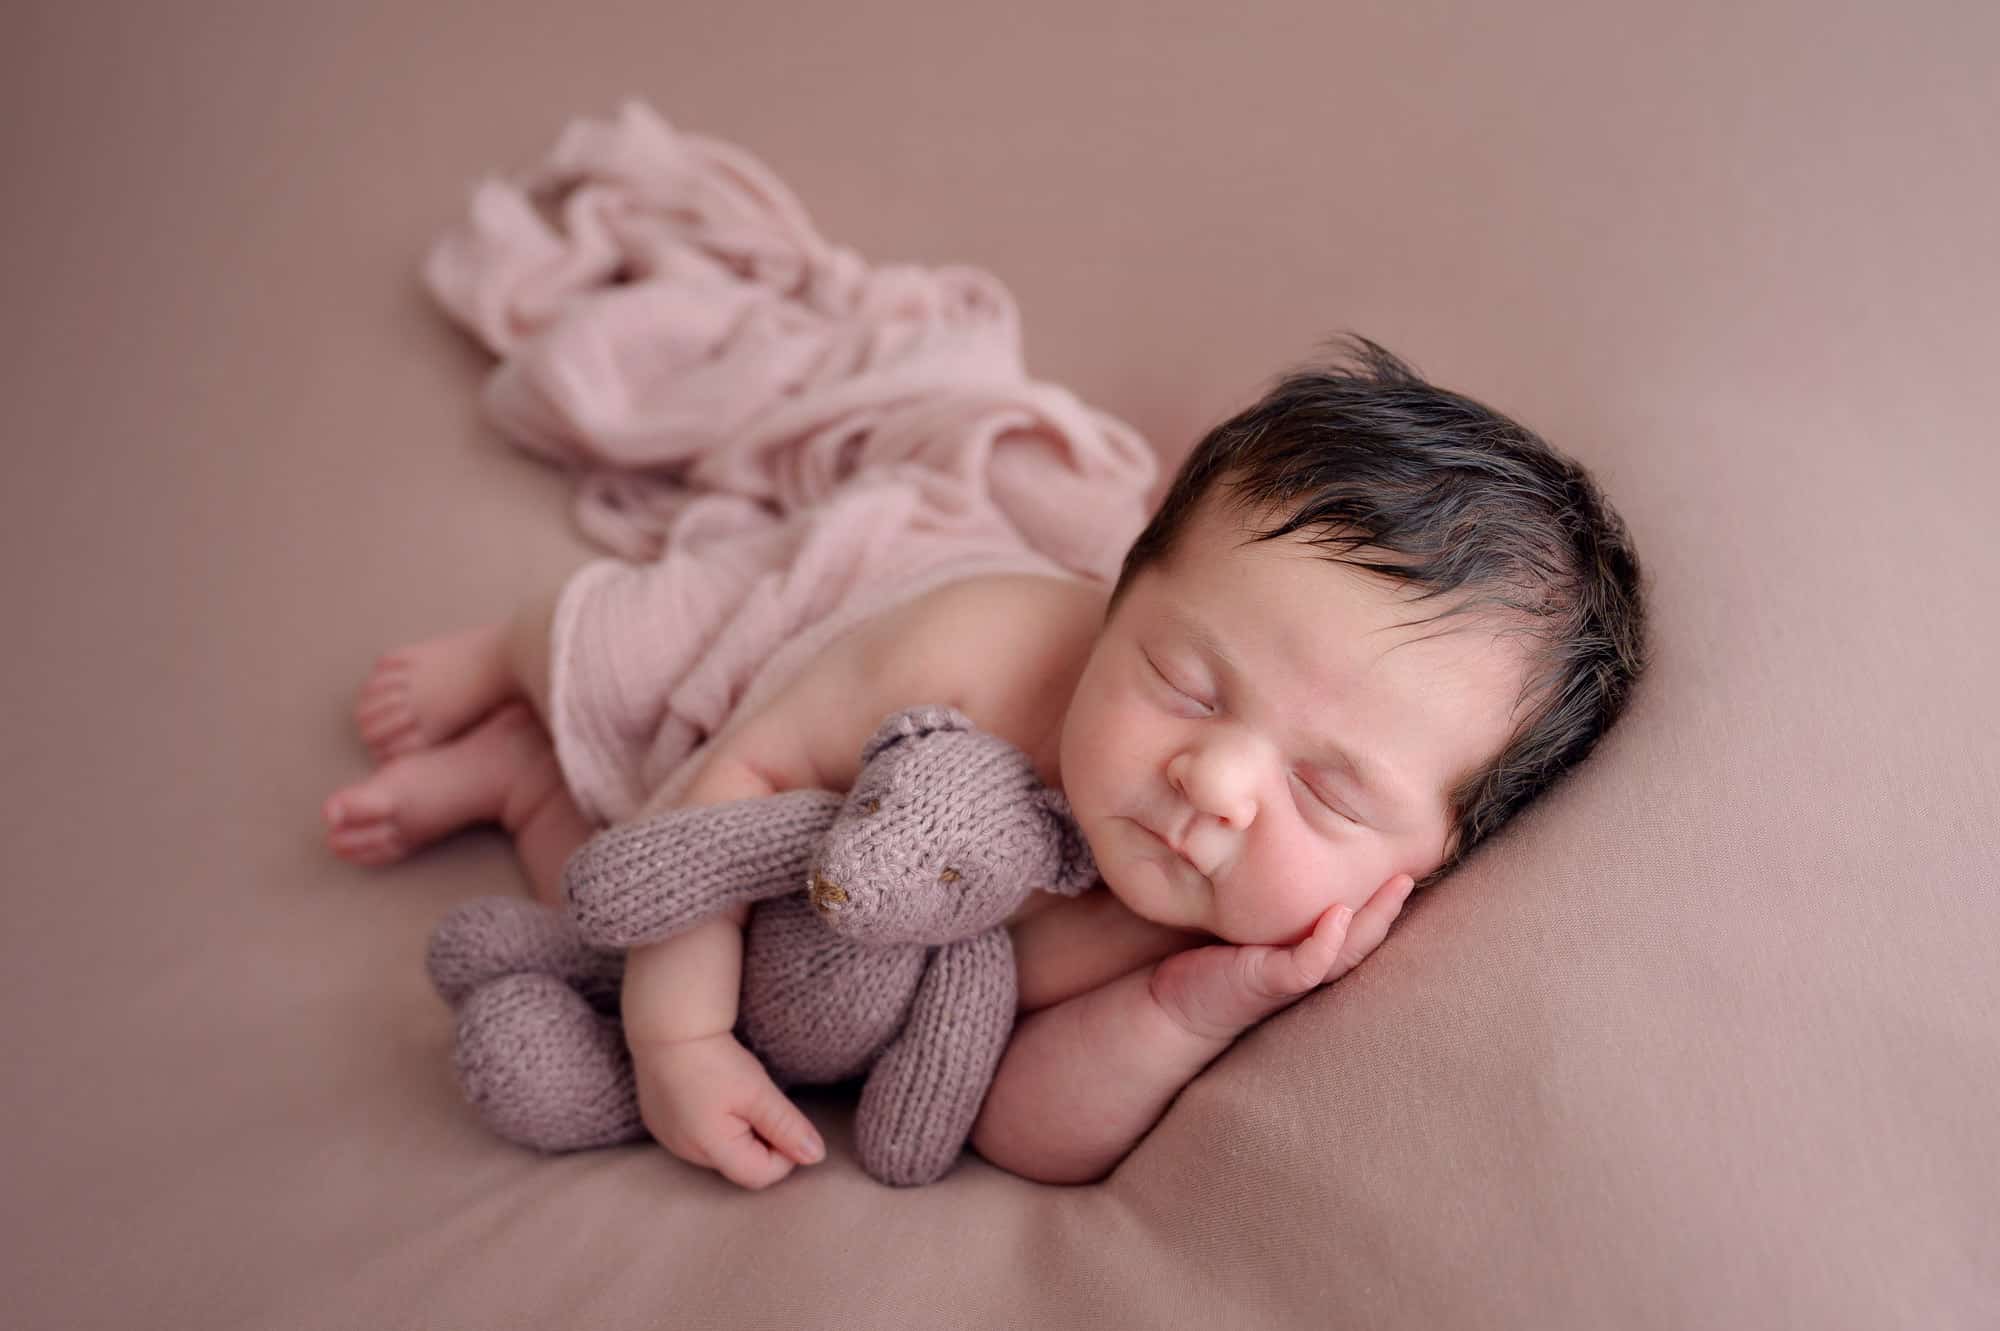 newborn baby cuddling pink teddy